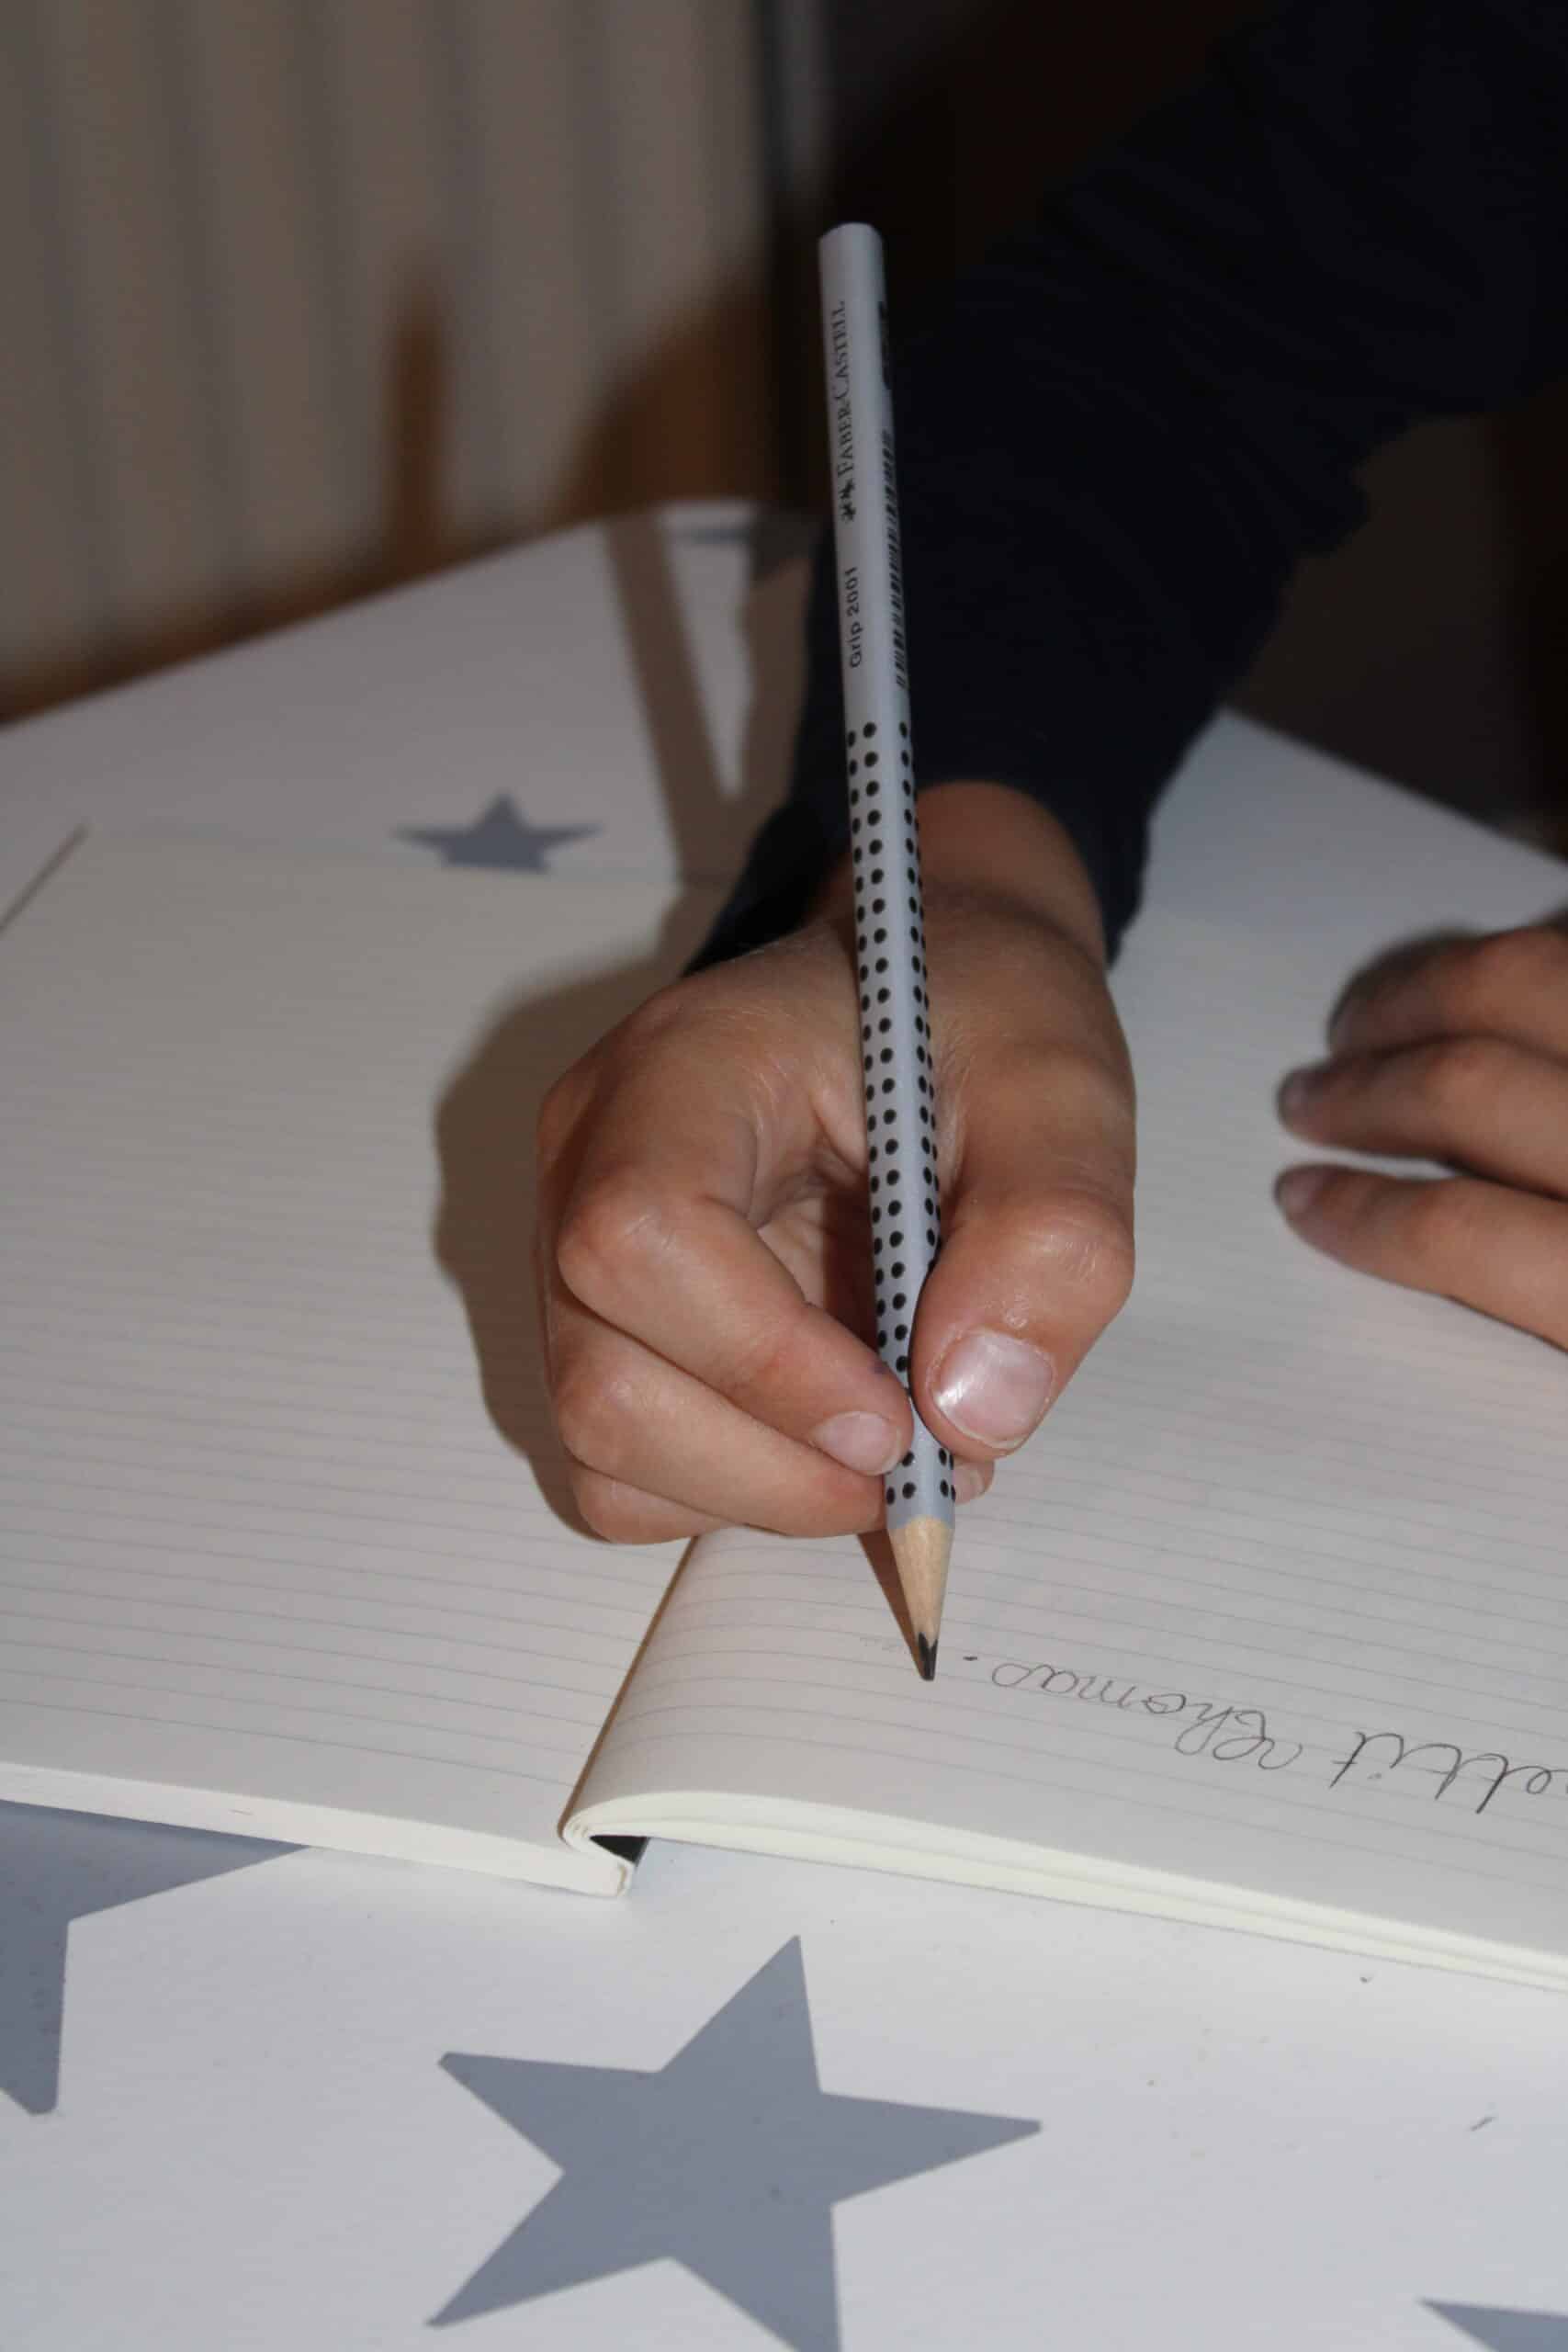 La position des doigts sur le crayon est importante. Le crayon est en appui dans la commissure pouce index et dans l'axe de l'avant-bras. Il est tenu entre la pulpe du pouce et le côté de la dernière phalange du majeur. L'index qui doit être souple, vient se poser sur le crayon.